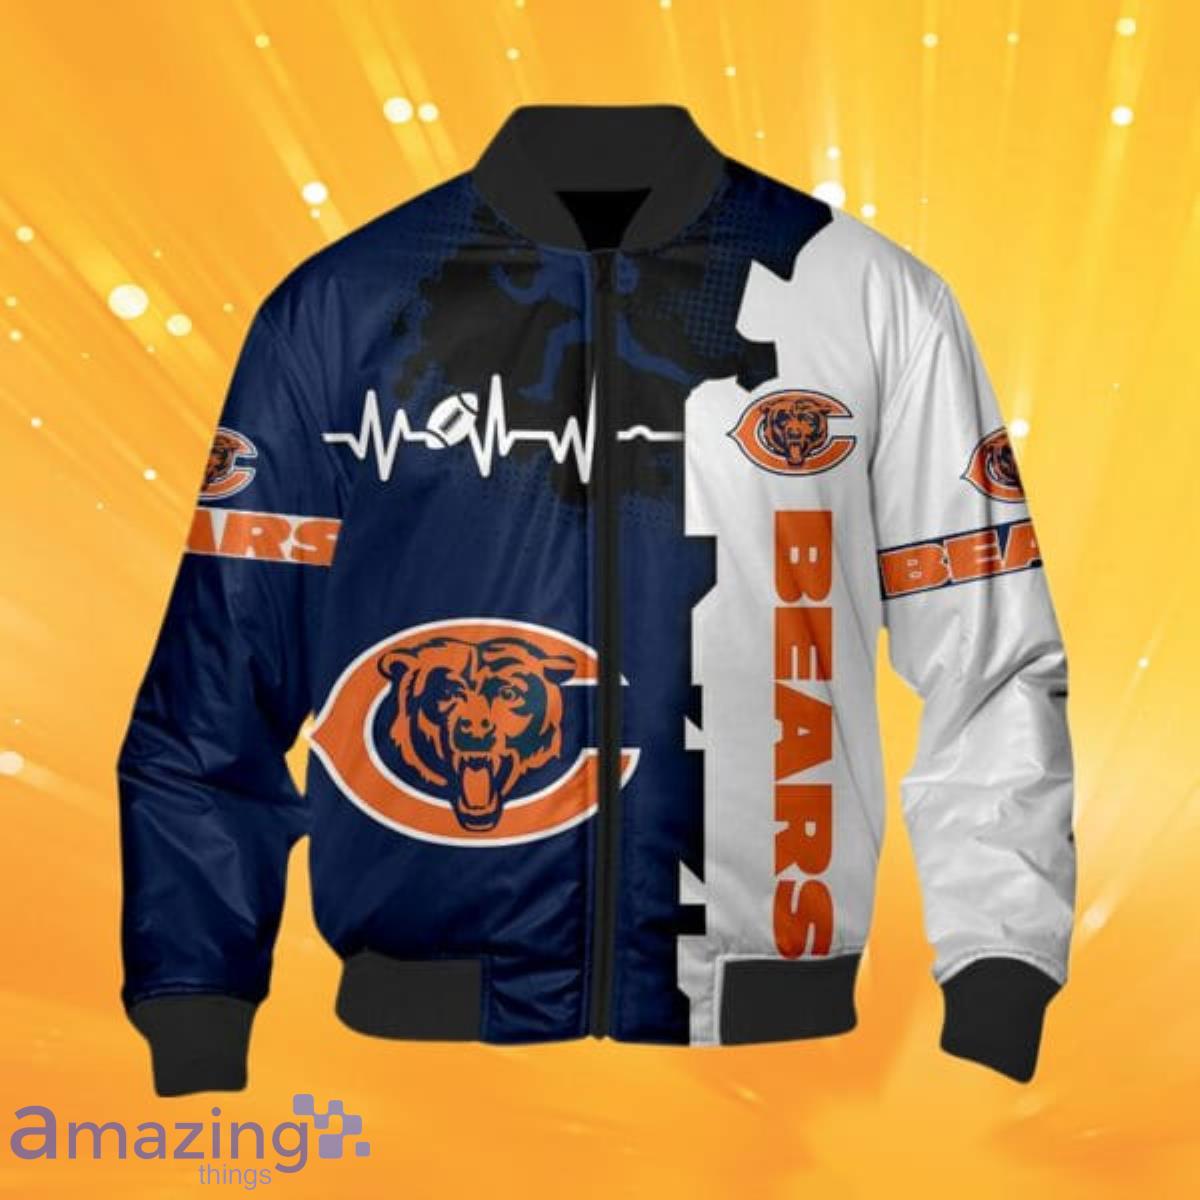 Chicago Bears NFL Varsity Orange and Blue Jacket